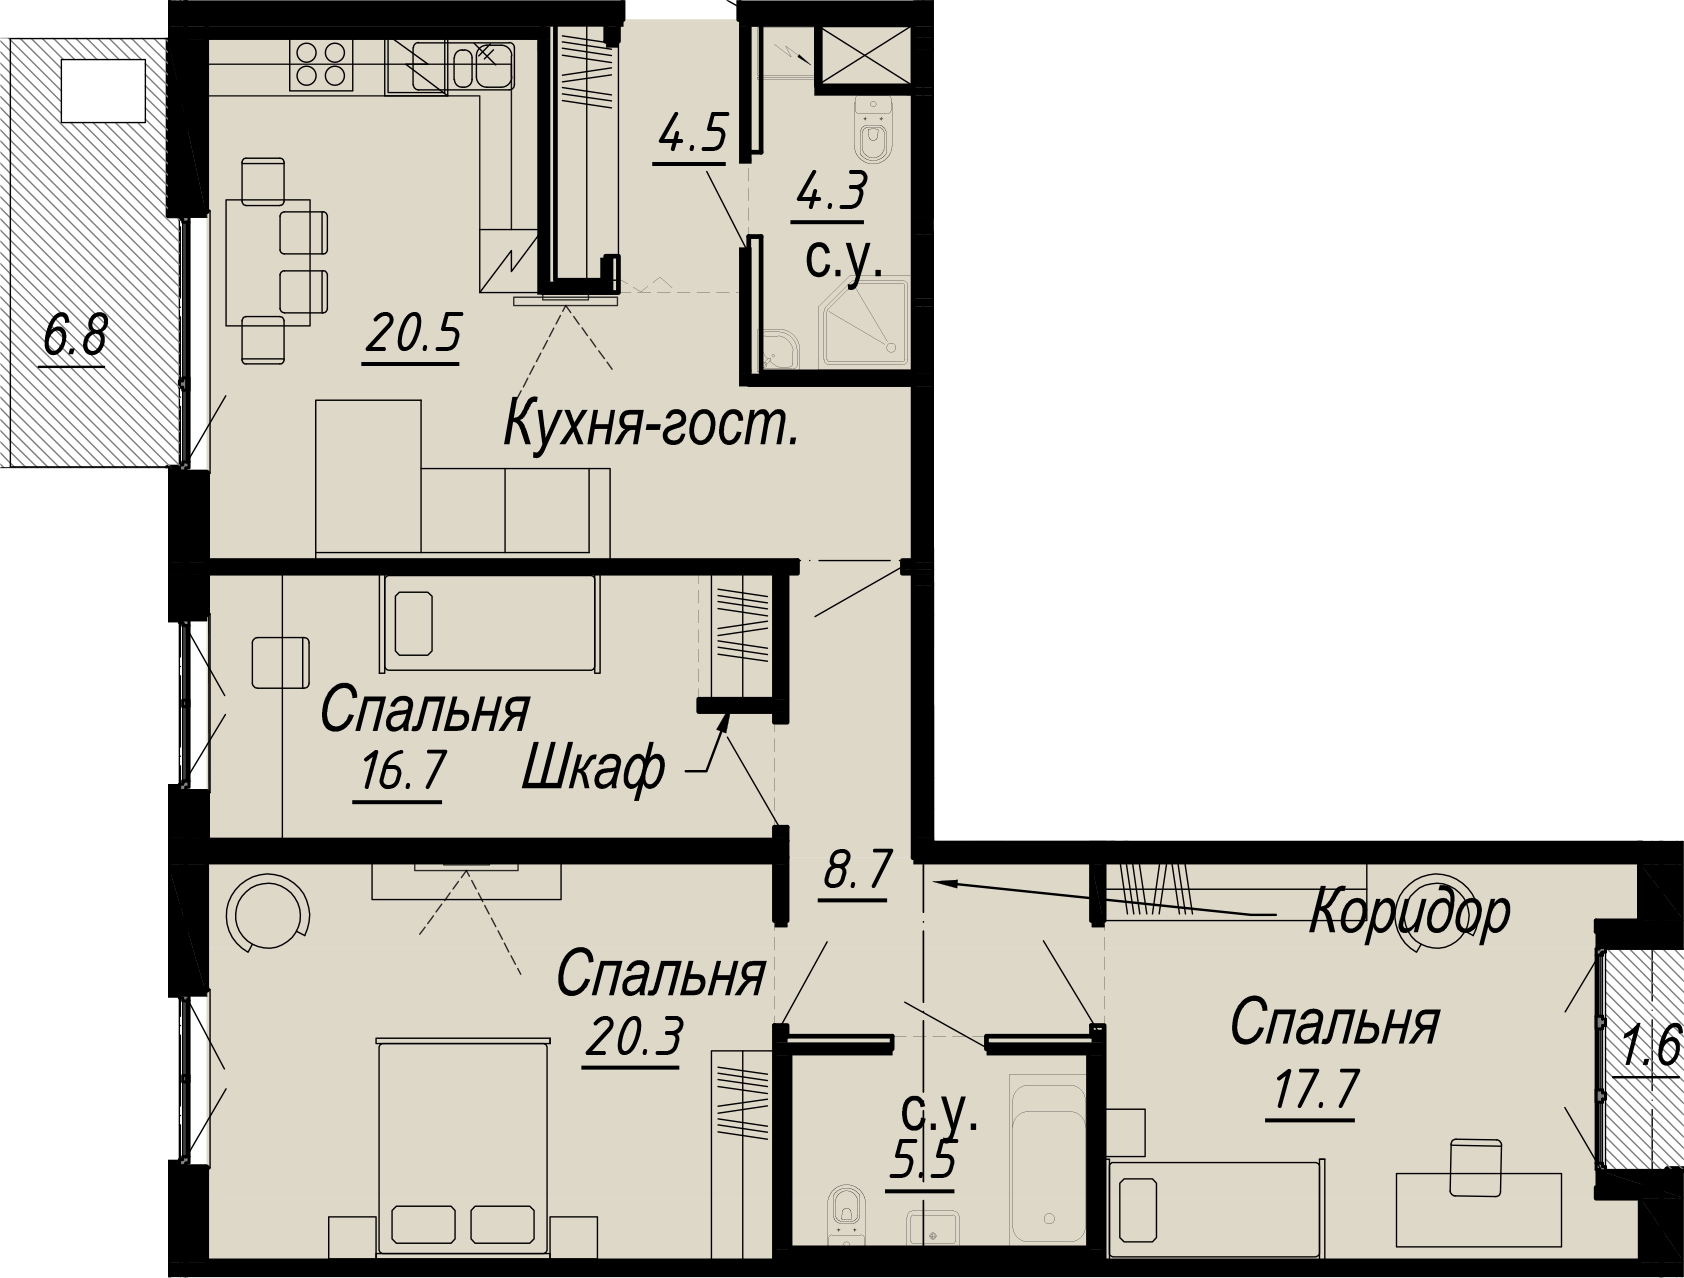 3-комнатная квартира  №11-6 в Meltzer Hall: 104.88 м², этаж 6 - купить в Санкт-Петербурге